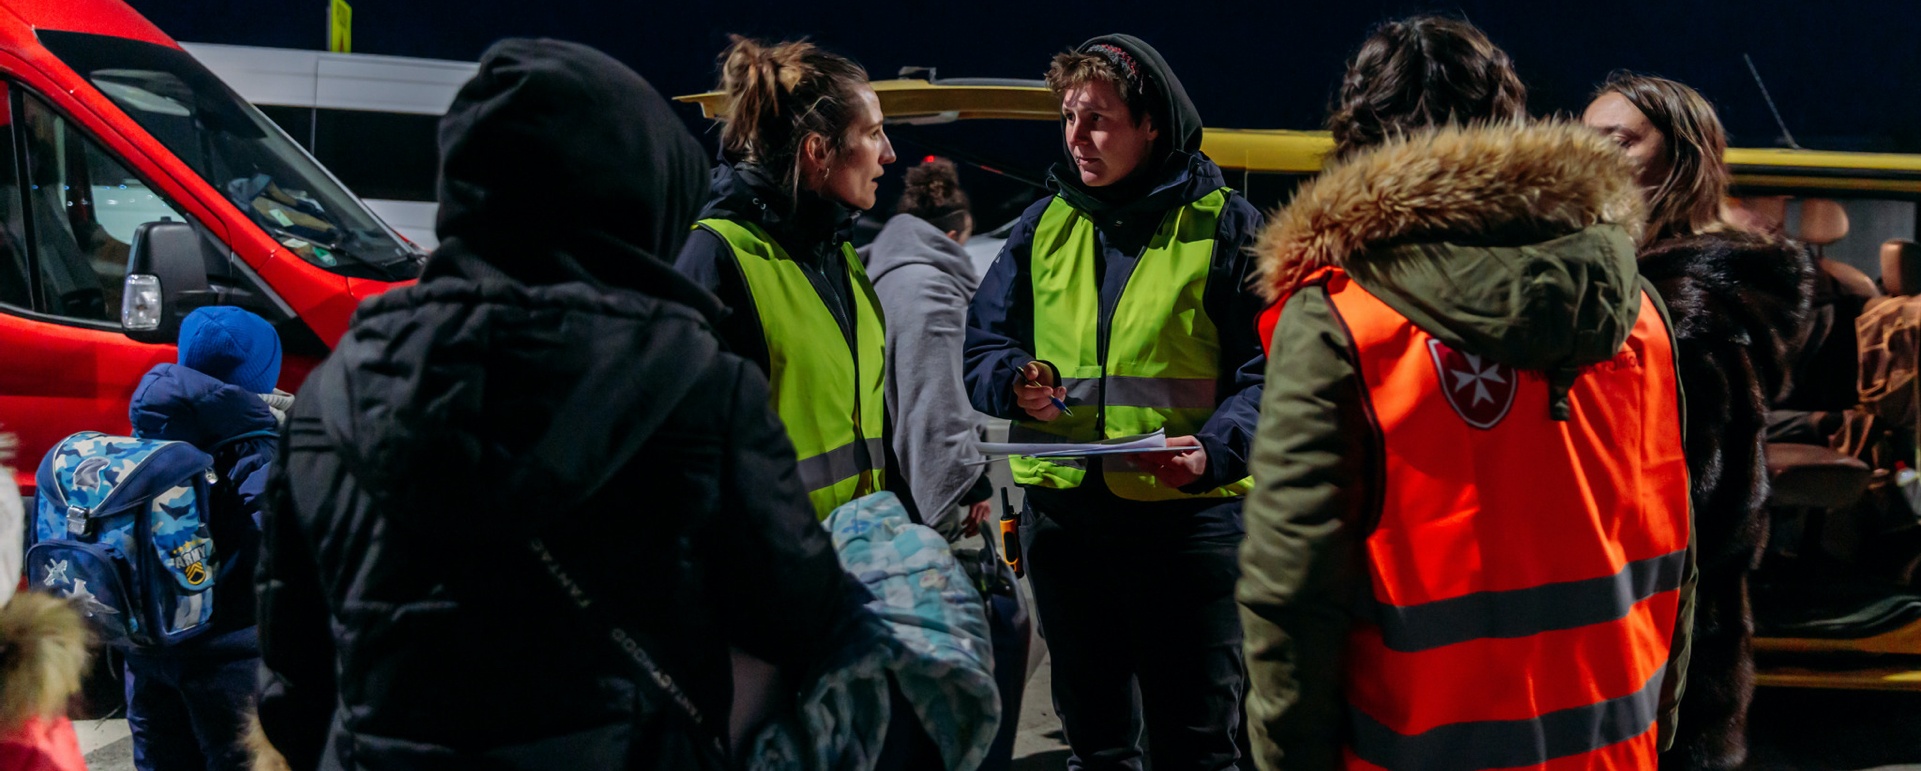 Mitarbeiter:innen von Mission Lifeline an der Ukrainischen Grenze bei der Evakuierung von Menschen